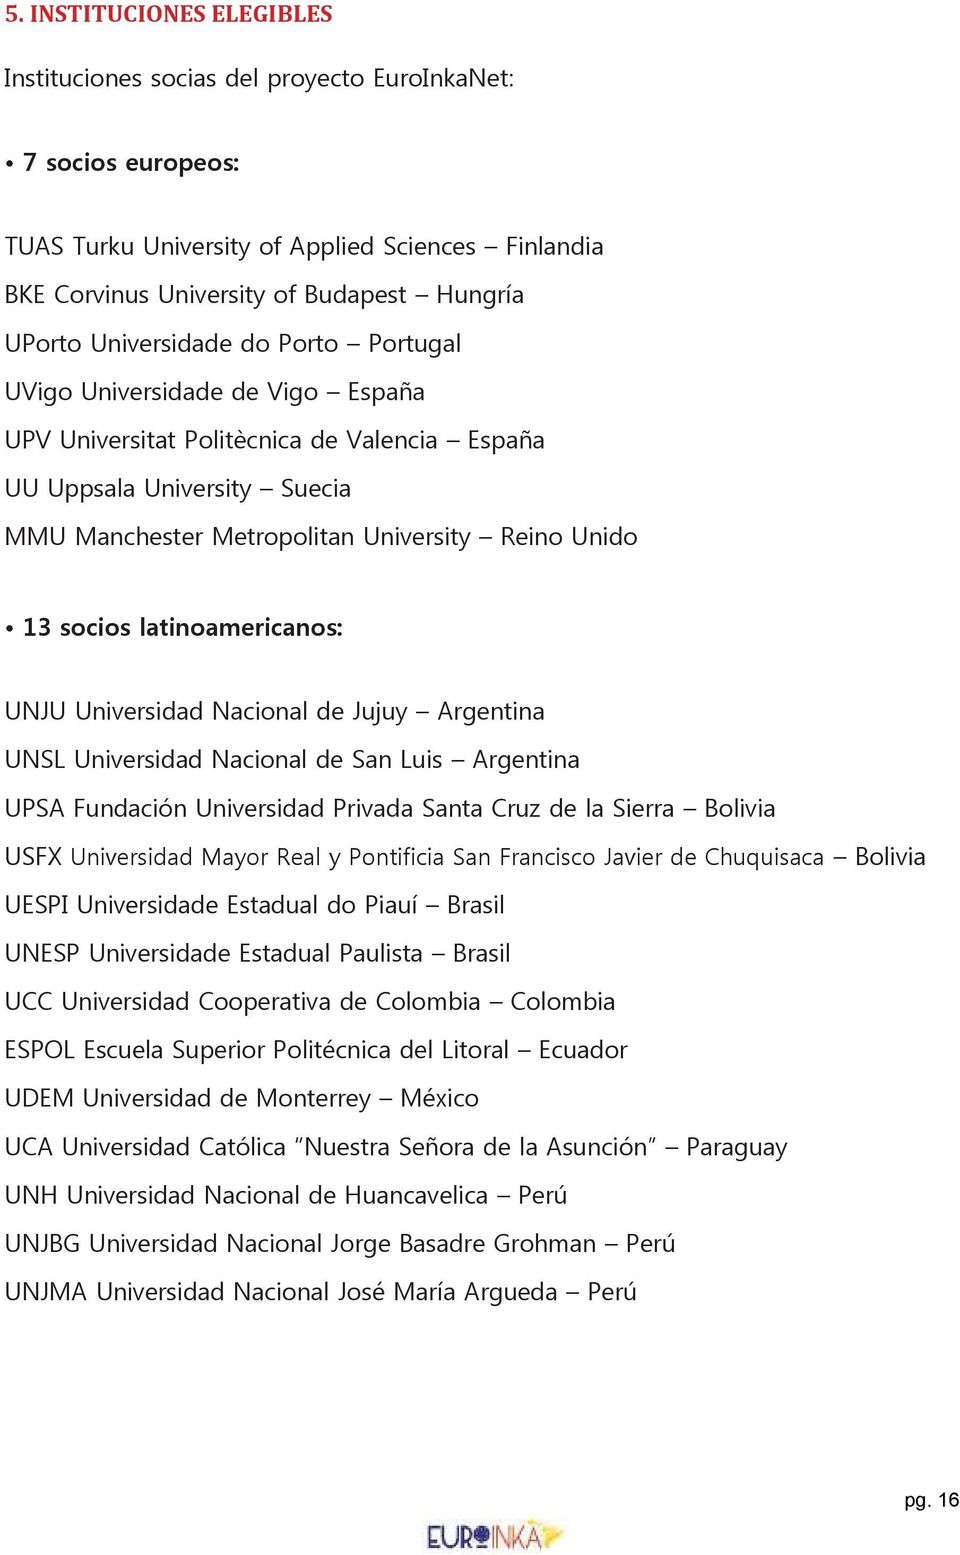 socios latinoamericanos: UNJU Universidad Nacional de Jujuy Argentina UNSL Universidad Nacional de San Luis Argentina UPSA Fundación Universidad Privada Santa Cruz de la Sierra Bolivia USFX